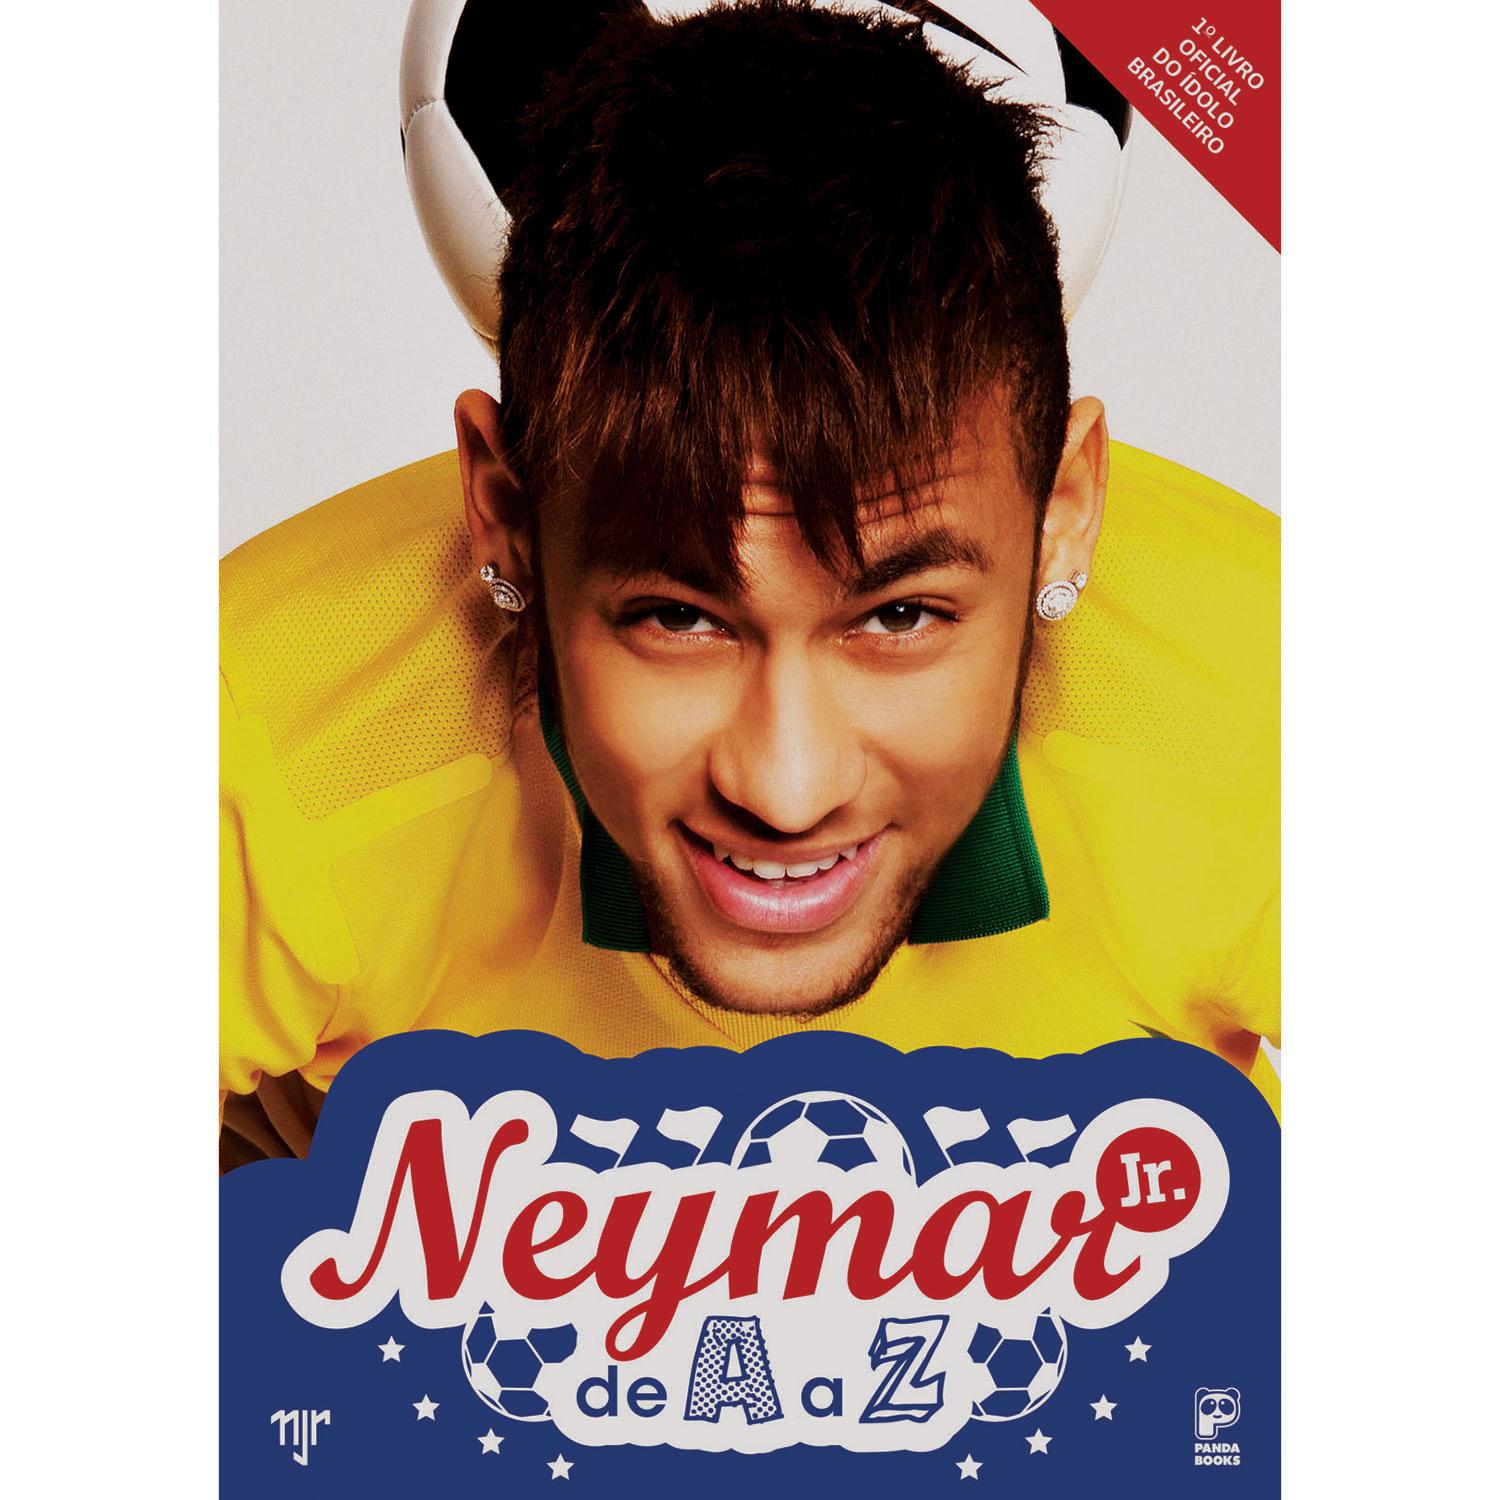 Livro - Neymar Jr. : De A a Z é bom? Vale a pena?